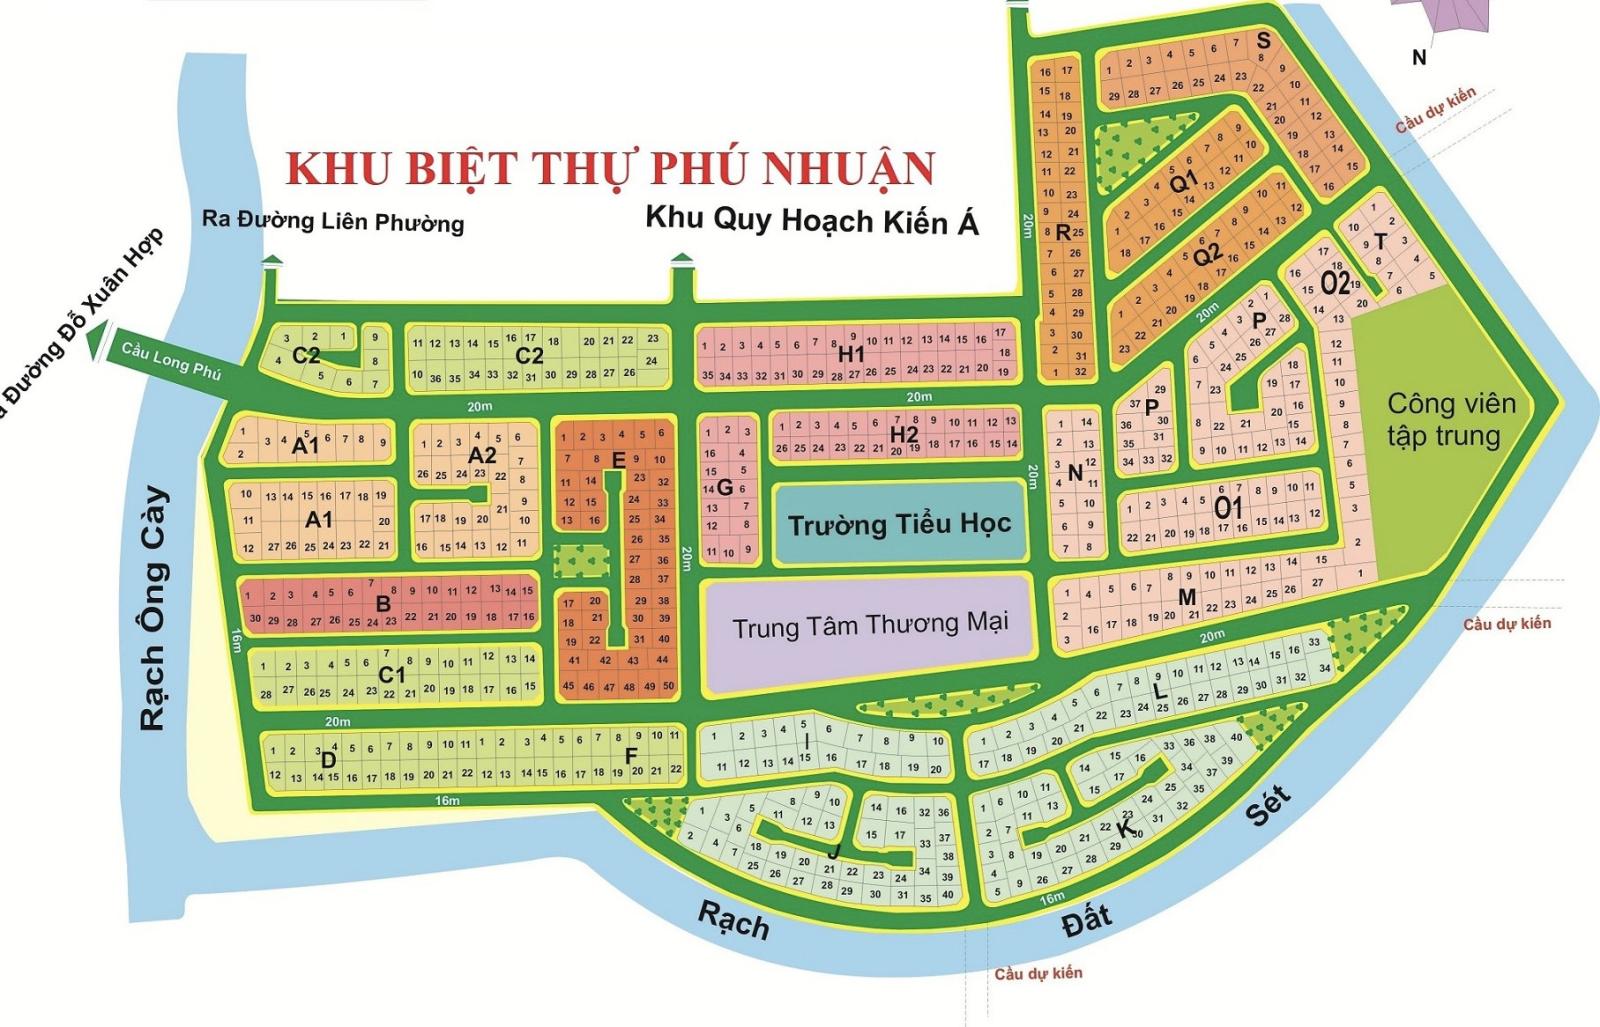 Bán đất KDC Phú Nhuận-Phước Long B Quận 9, nhiều vị trí đẹp